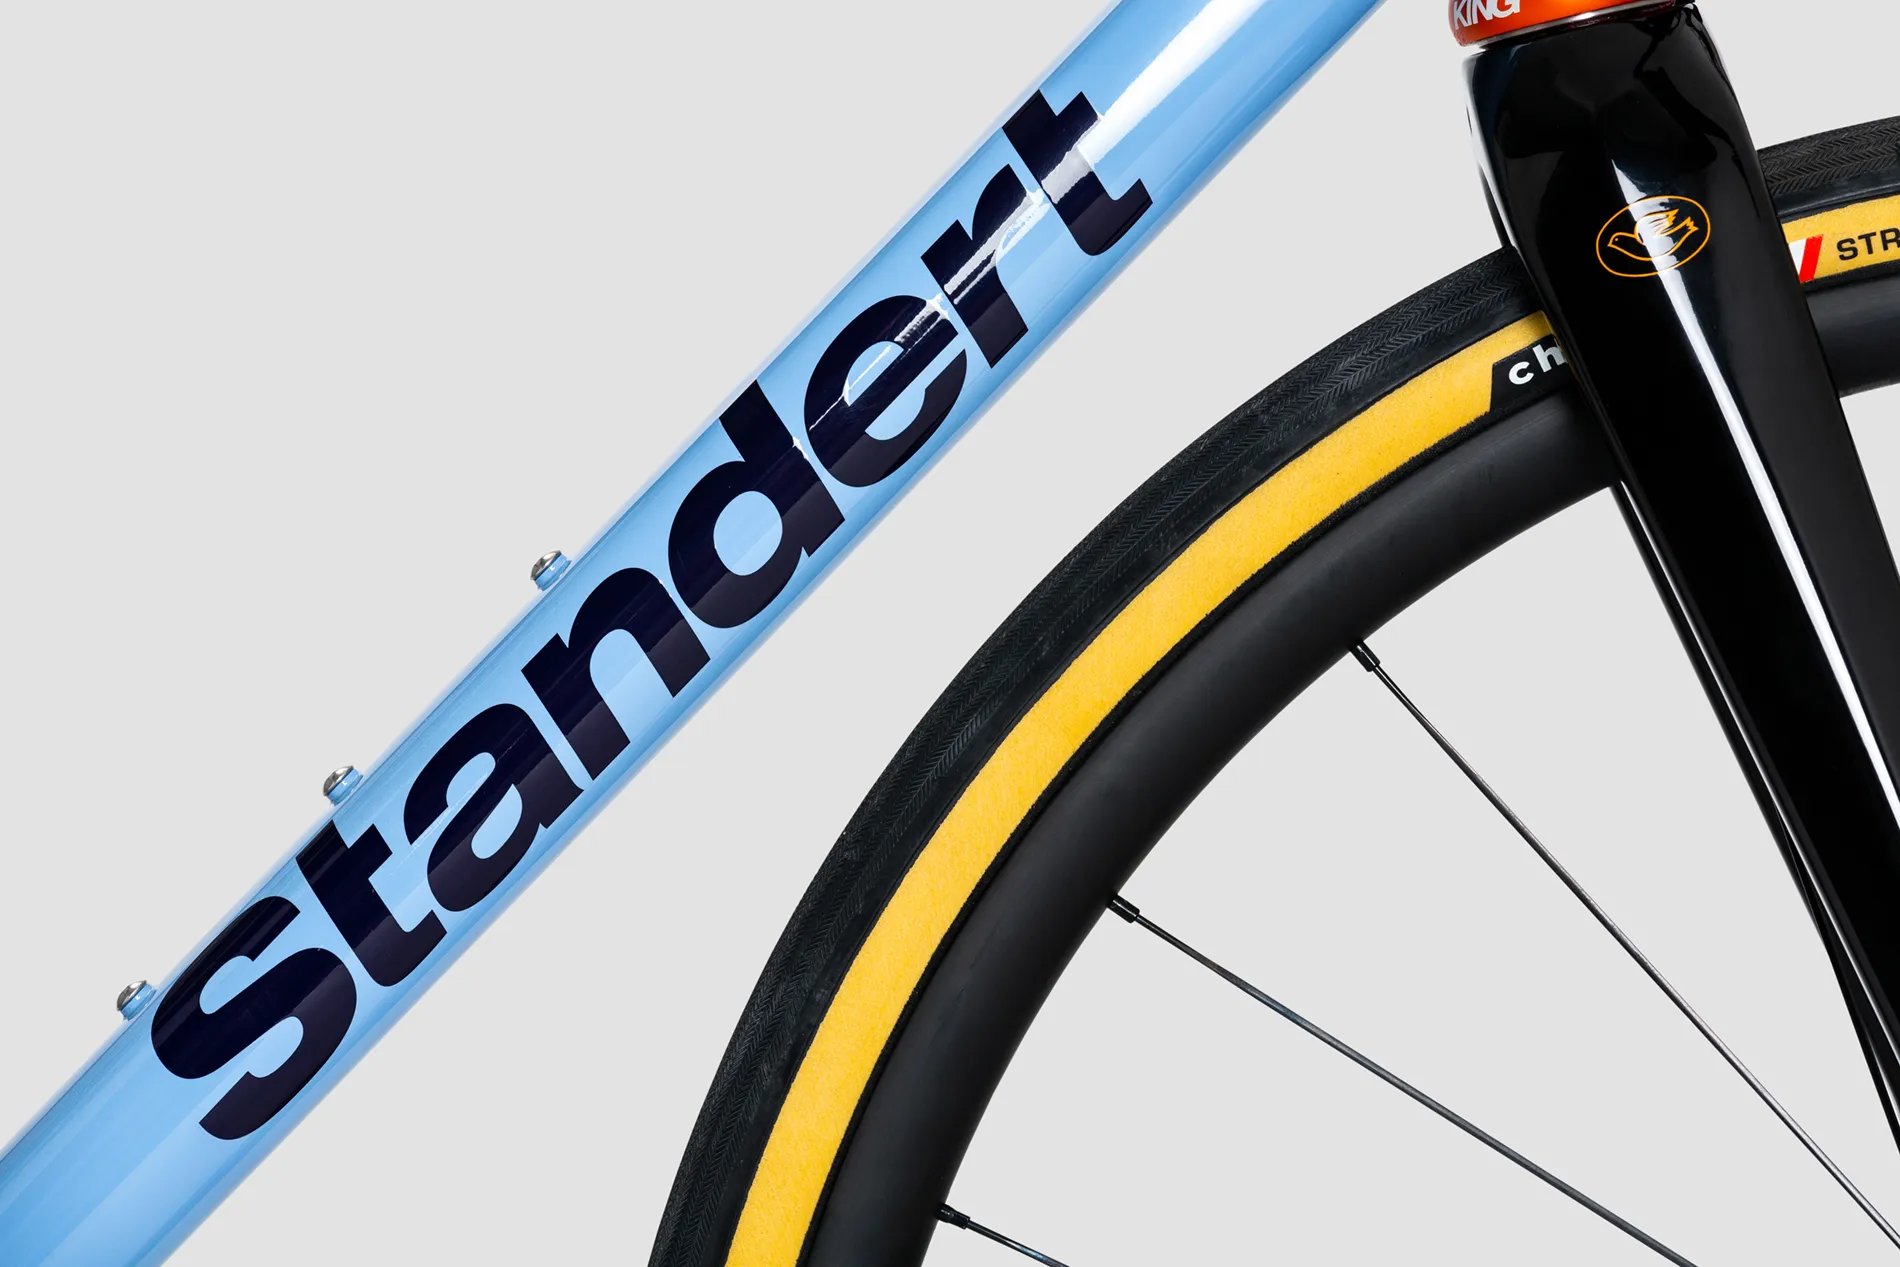 Pfadfinder LTD Endurance Bike by Standert